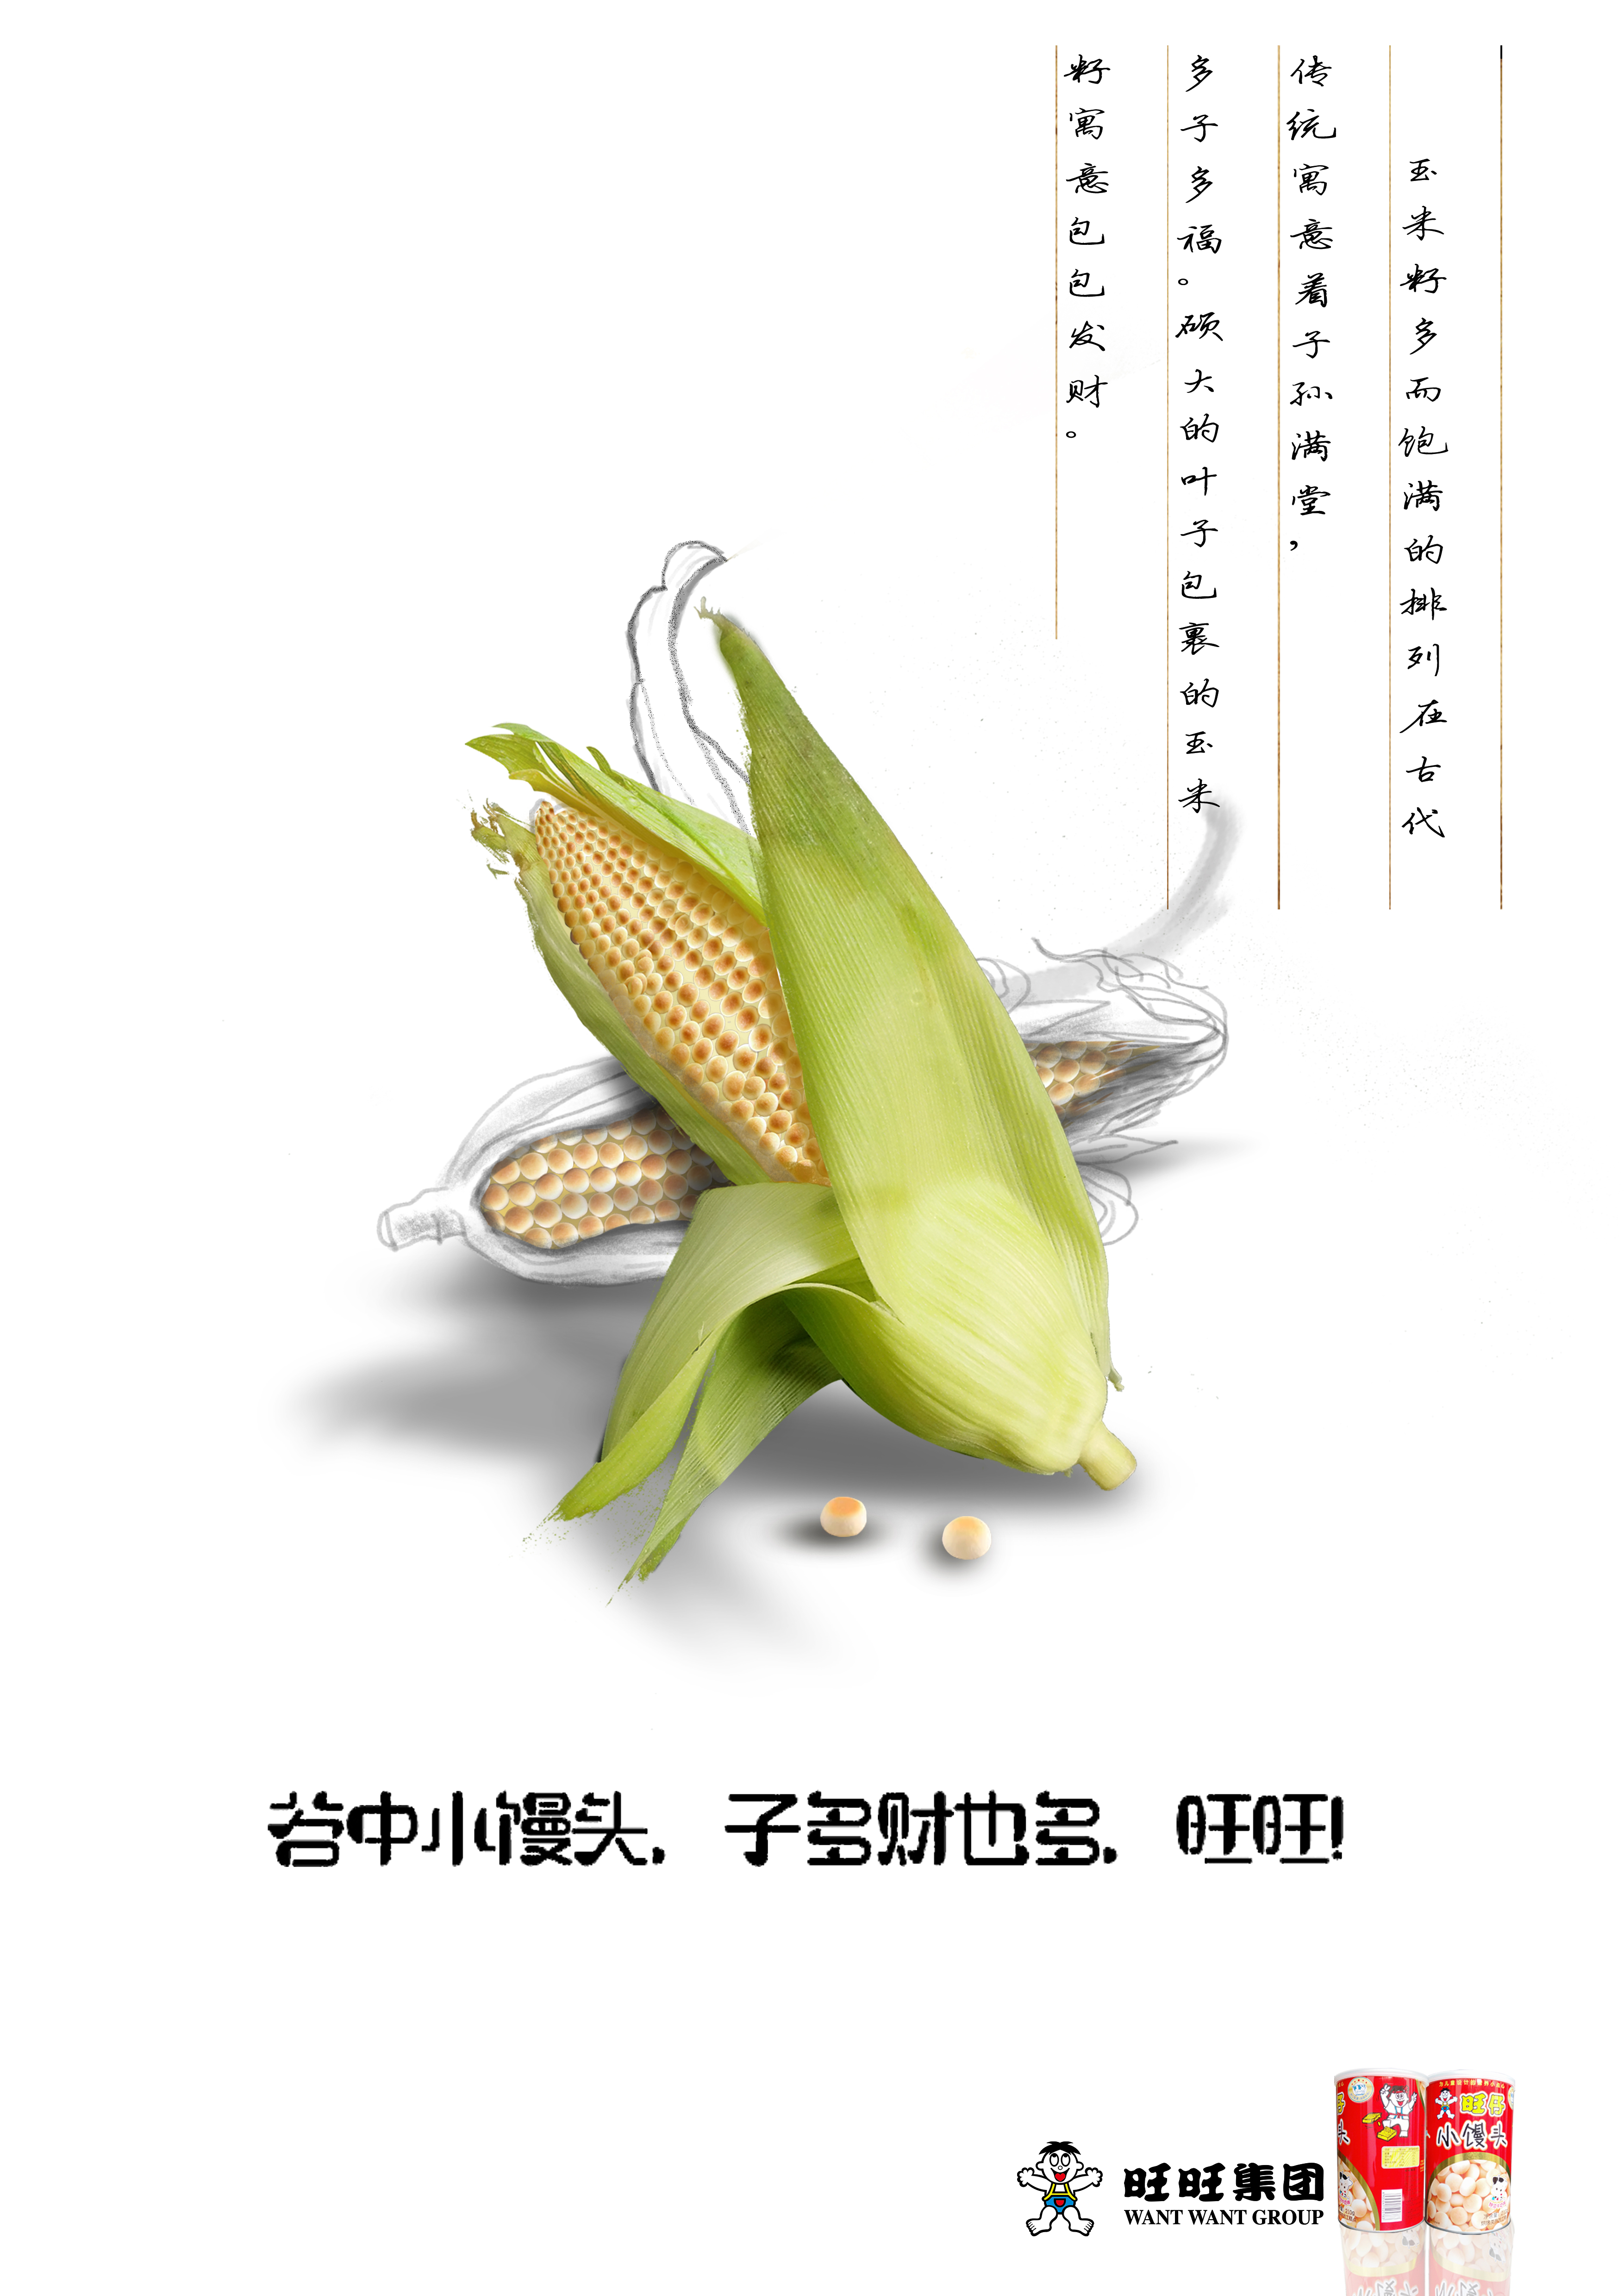 玉米籽多而饱满的排列在古代传统寓意着子孙满堂,多子多福